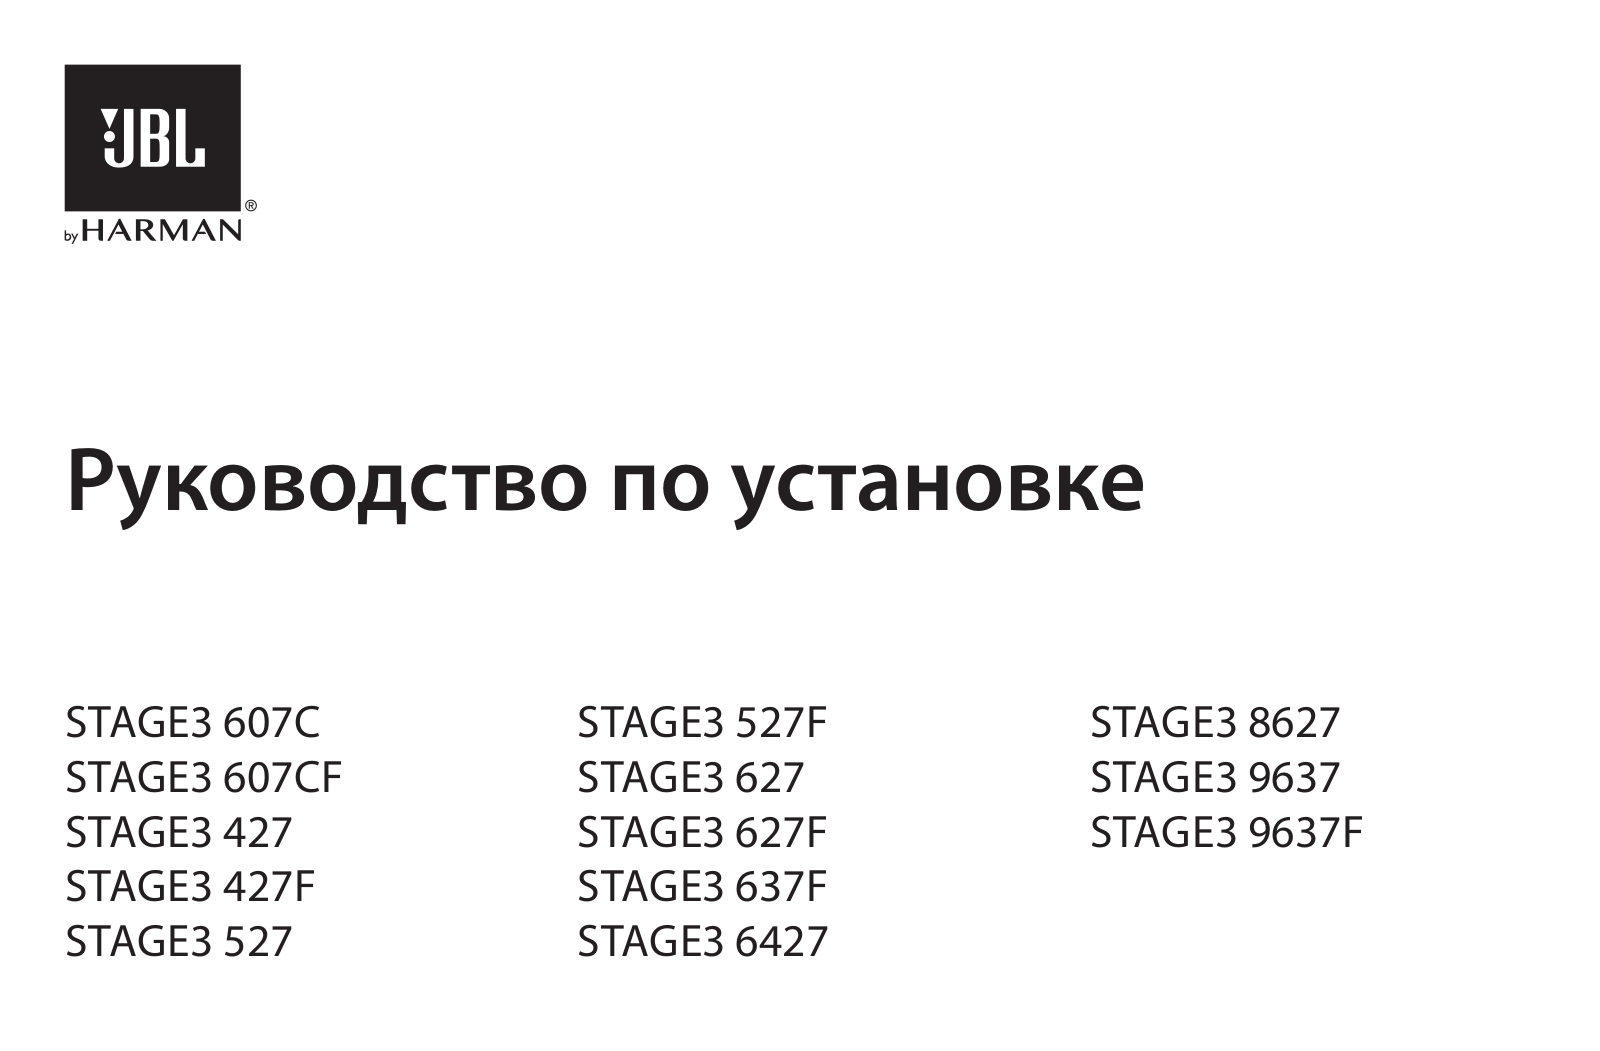 JBL Stage3 627F, Stage3 9637F, Stage3 627, Stage3 637F, Stage3 607CF Manual